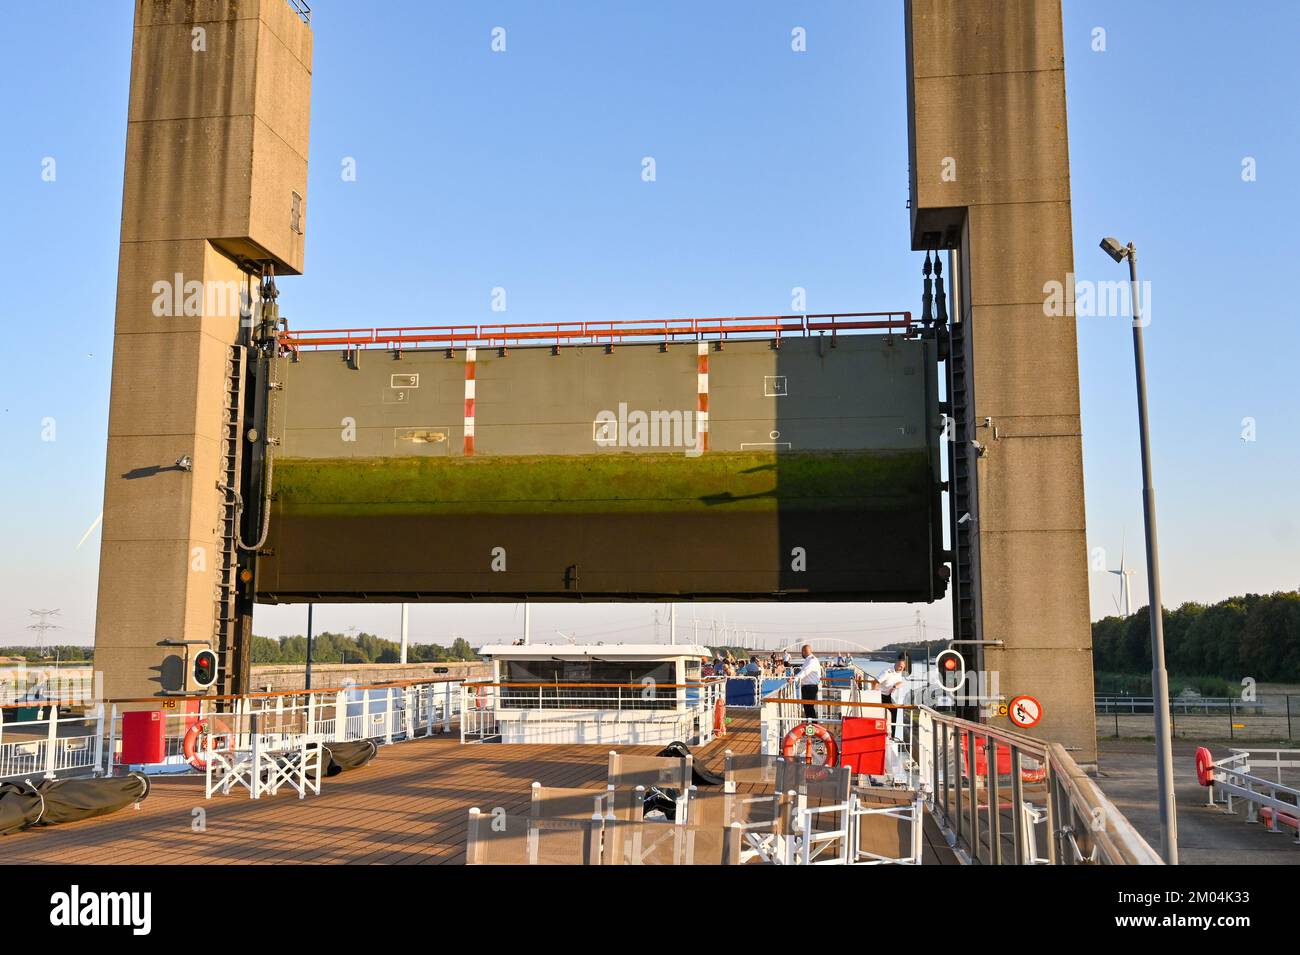 Rilland, Niederlande - August 2022: Flussrundfahrt unter dem schweren Stahltor einer großen Kanalschleuse Stockfoto